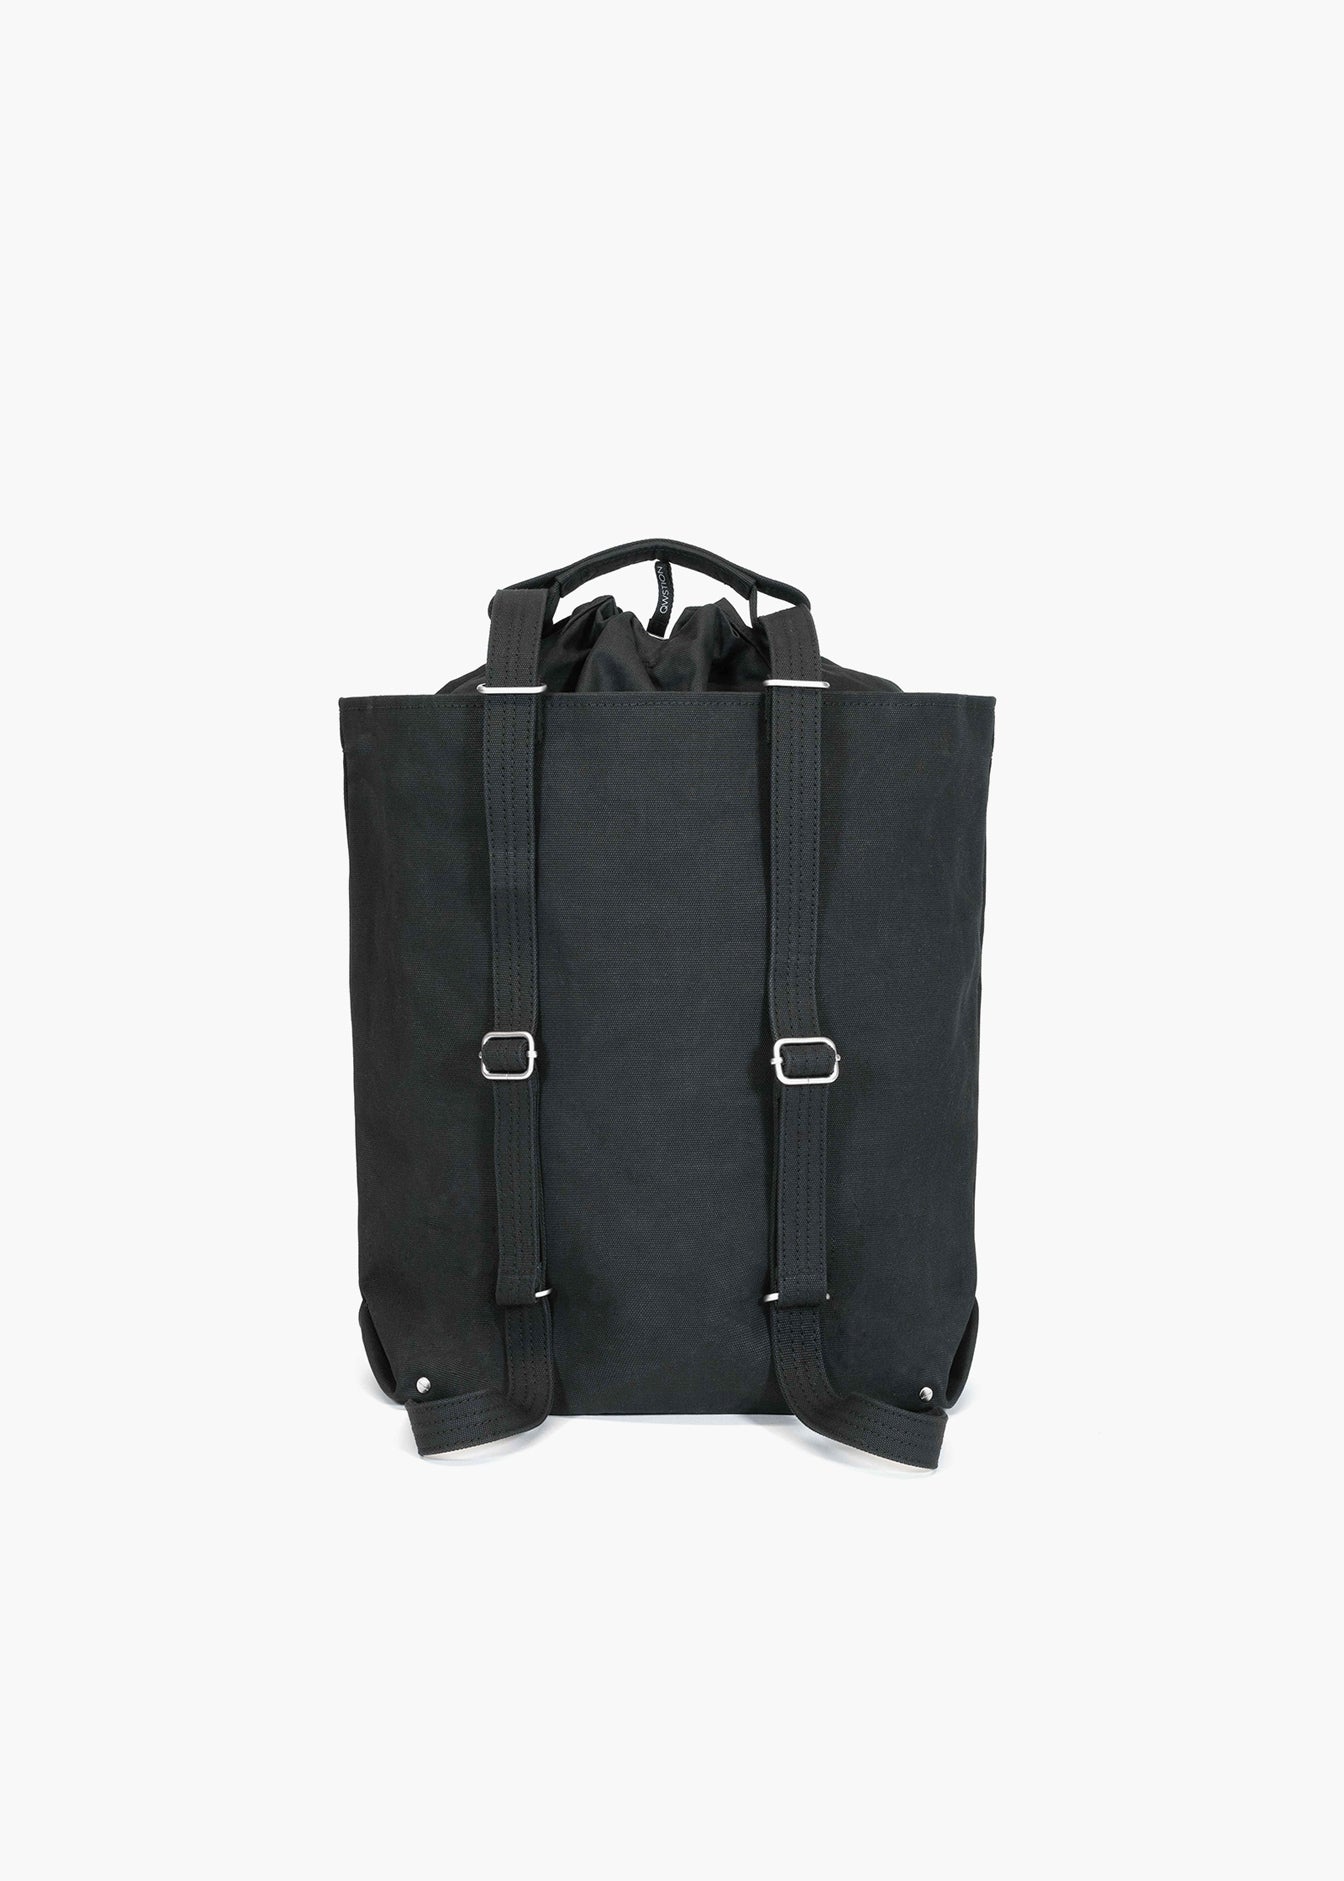 Bananatex® Tote Bag Medium – Black / Black